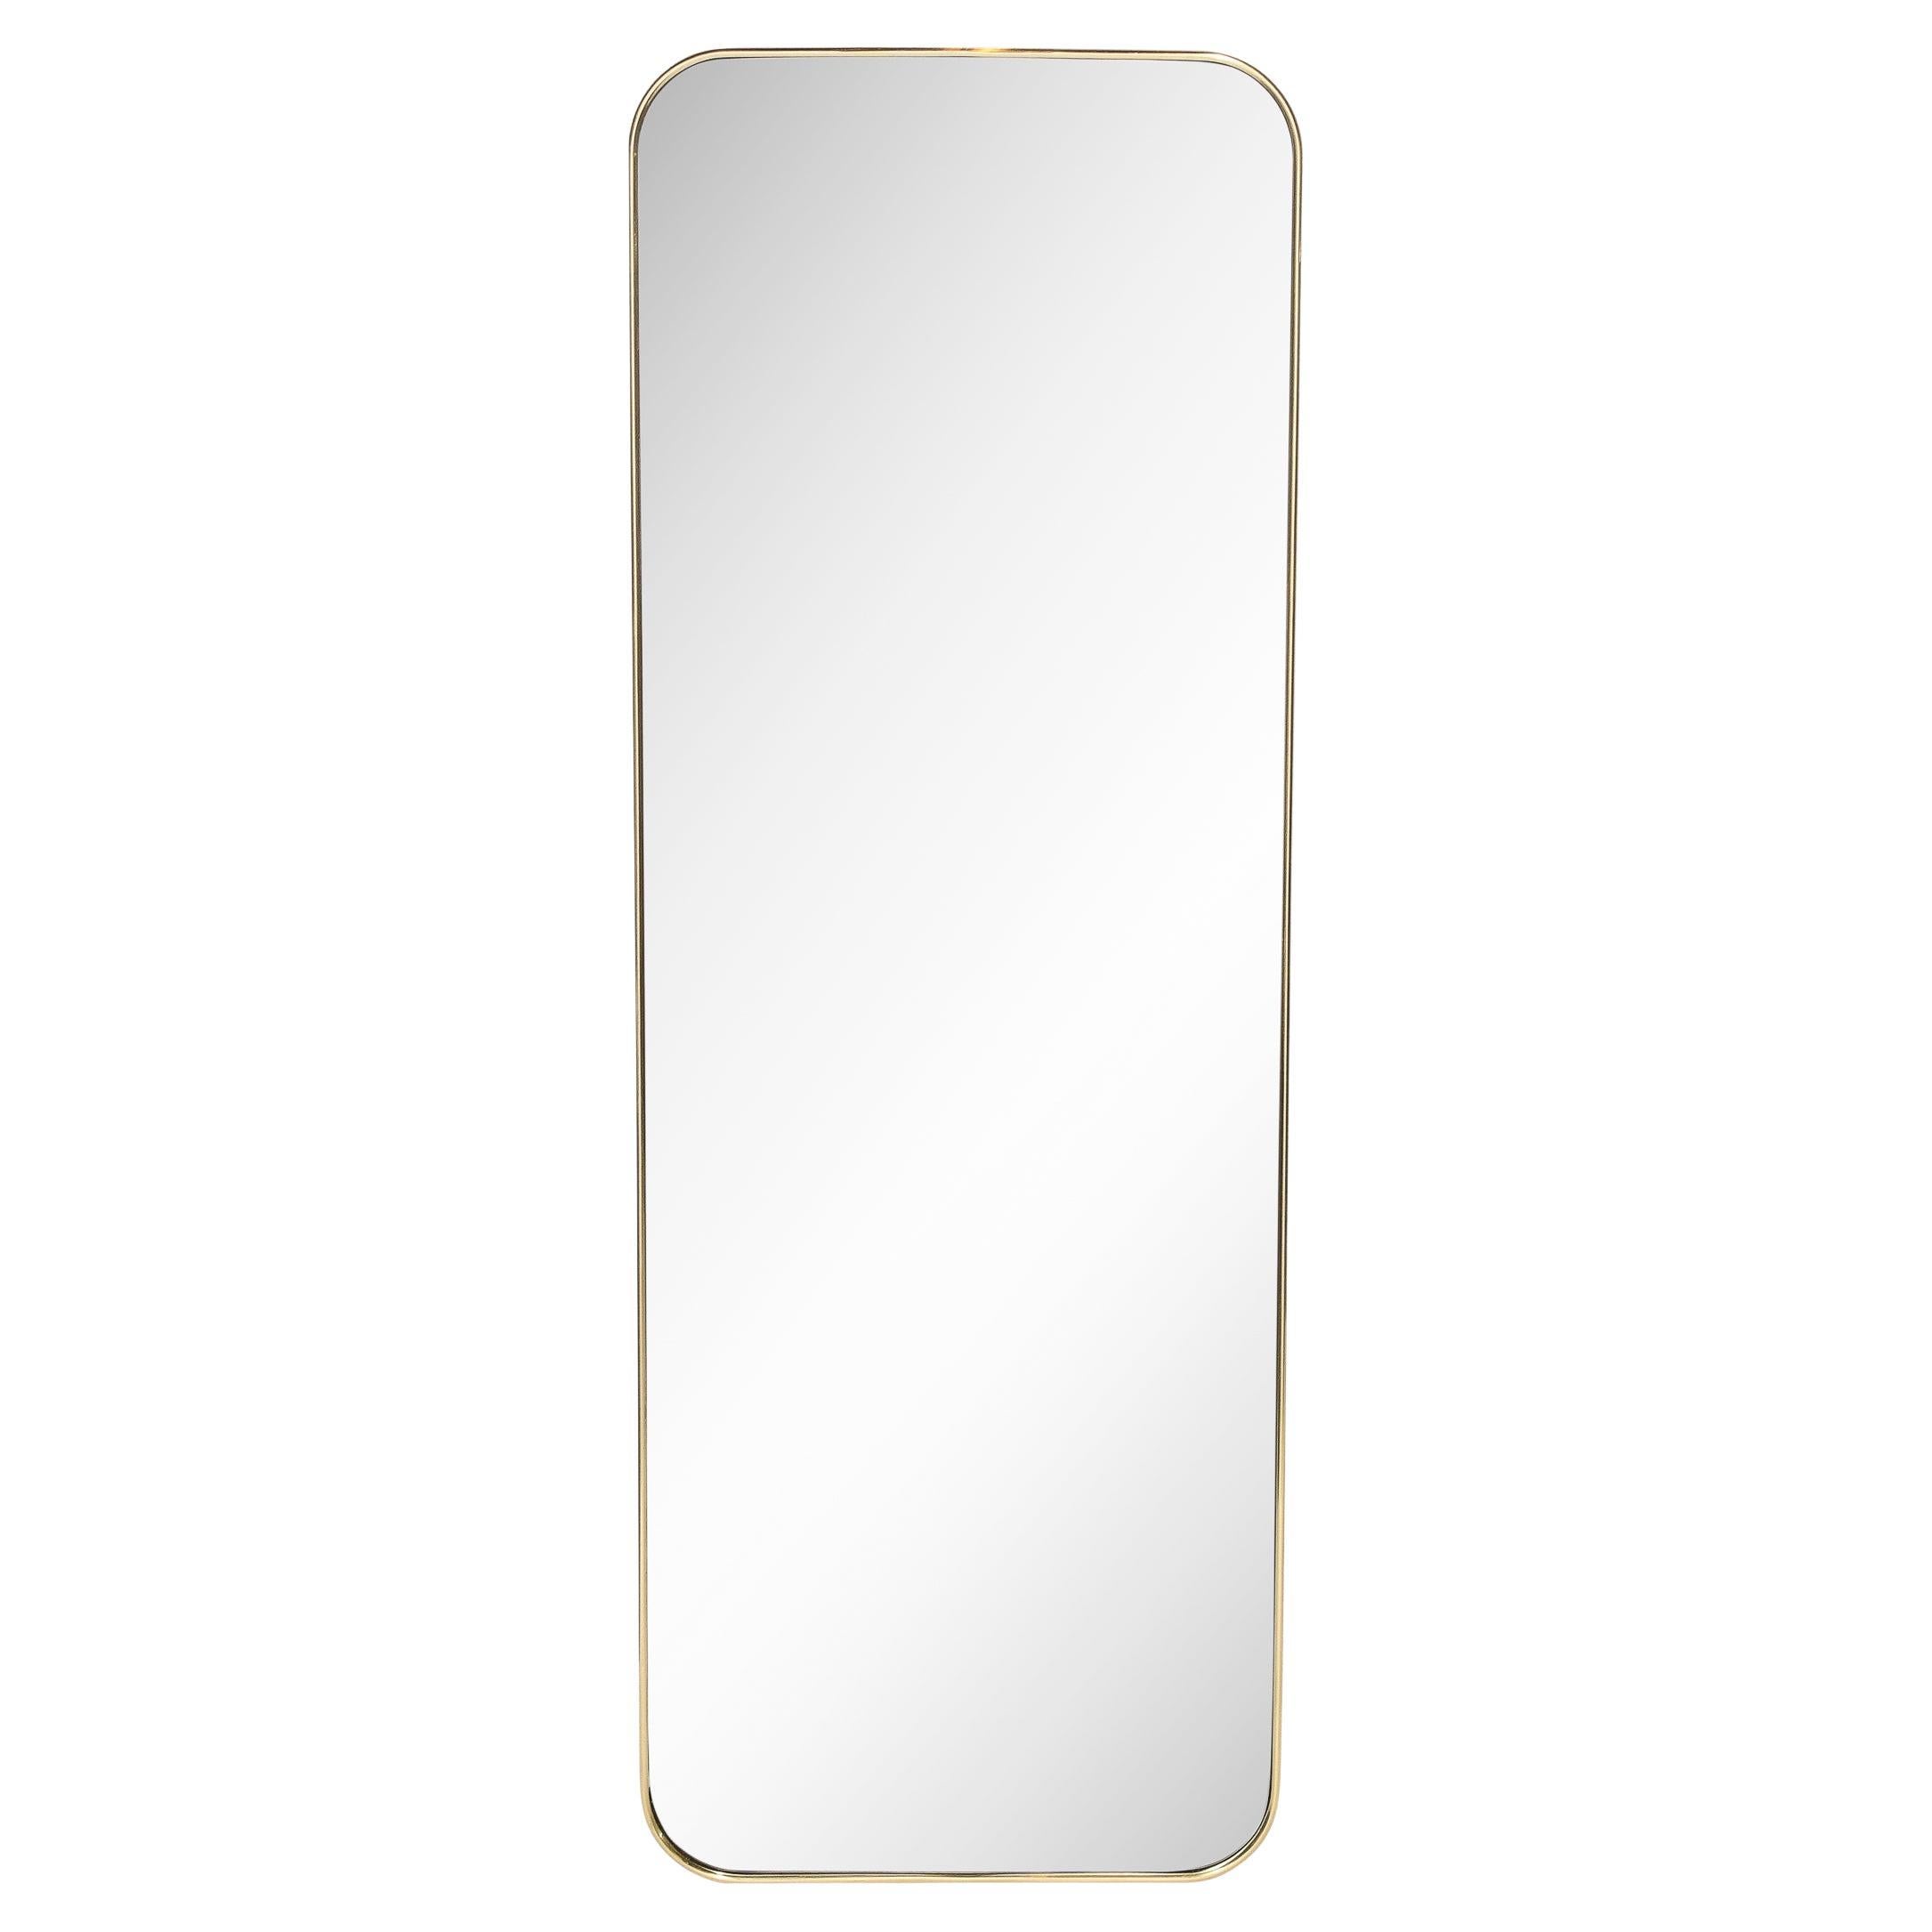 Miroir moderniste enveloppé de laiton poli fait sur mesure pour le style déco haut de gamme